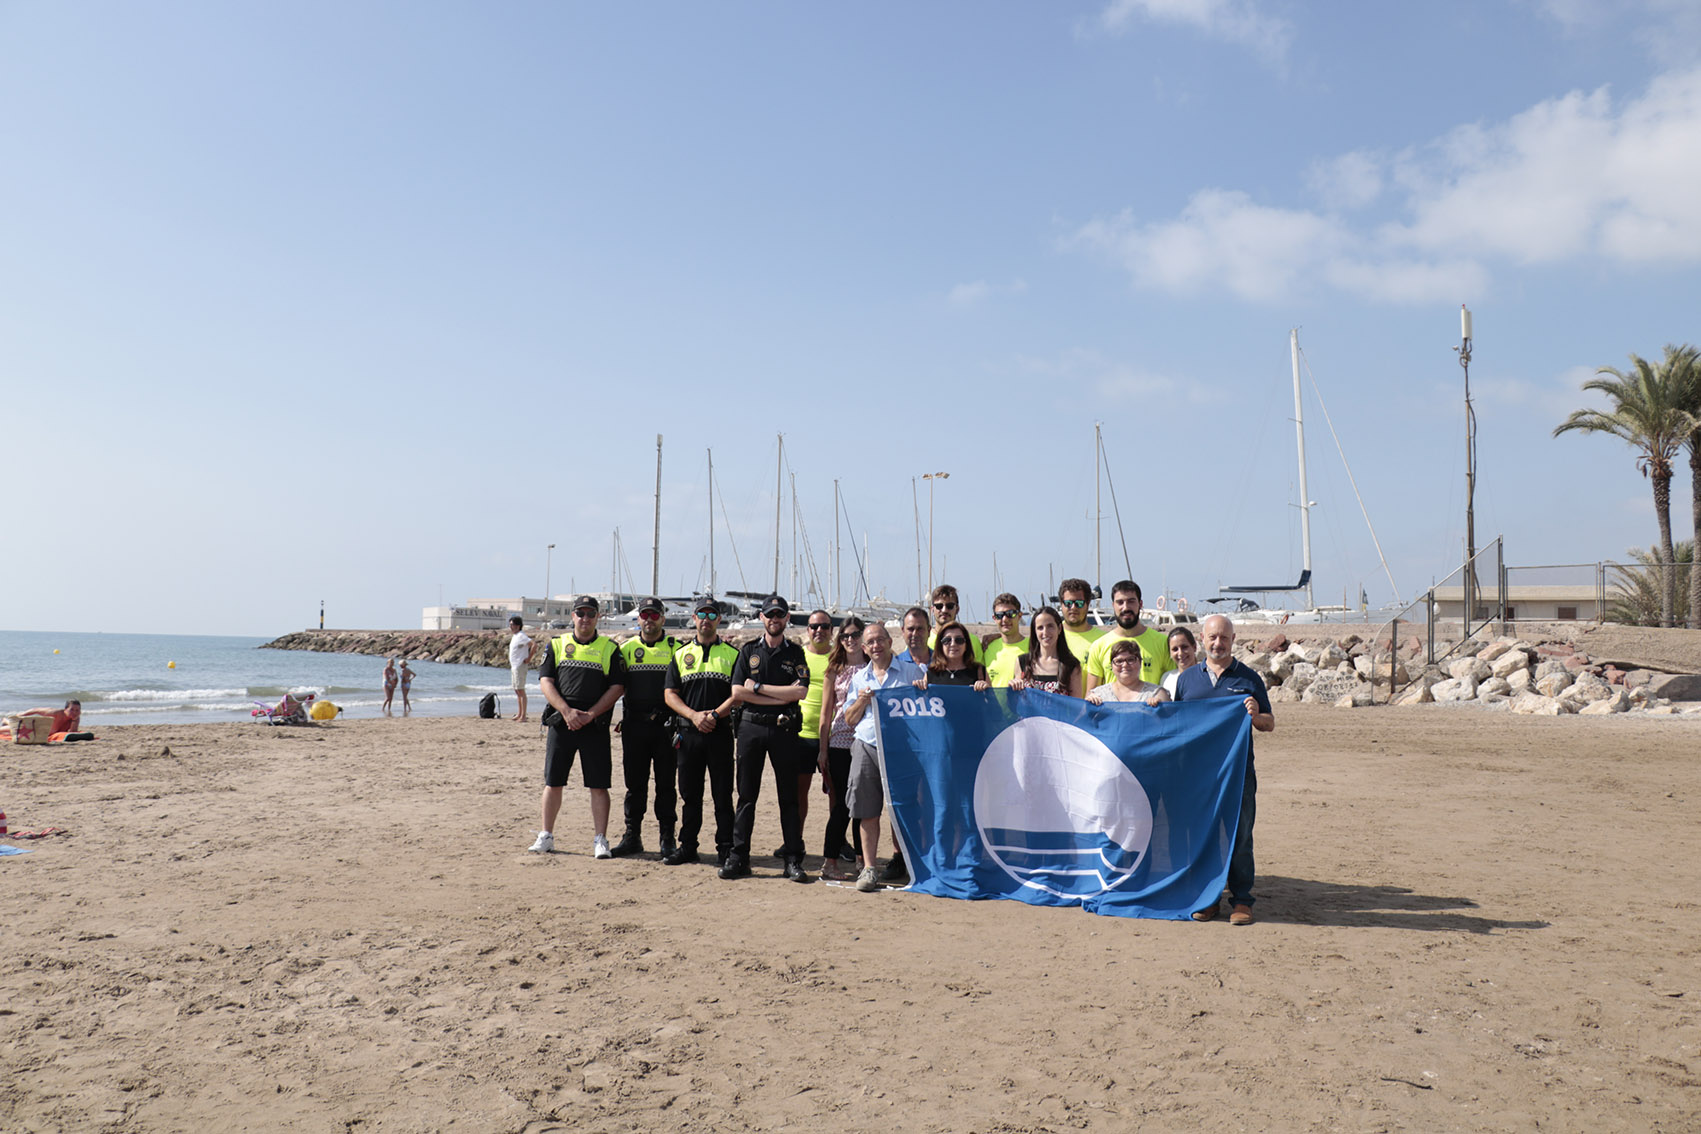 Bandera Azul 2018 - Platja nord - Pobla de Farnals - Valencia